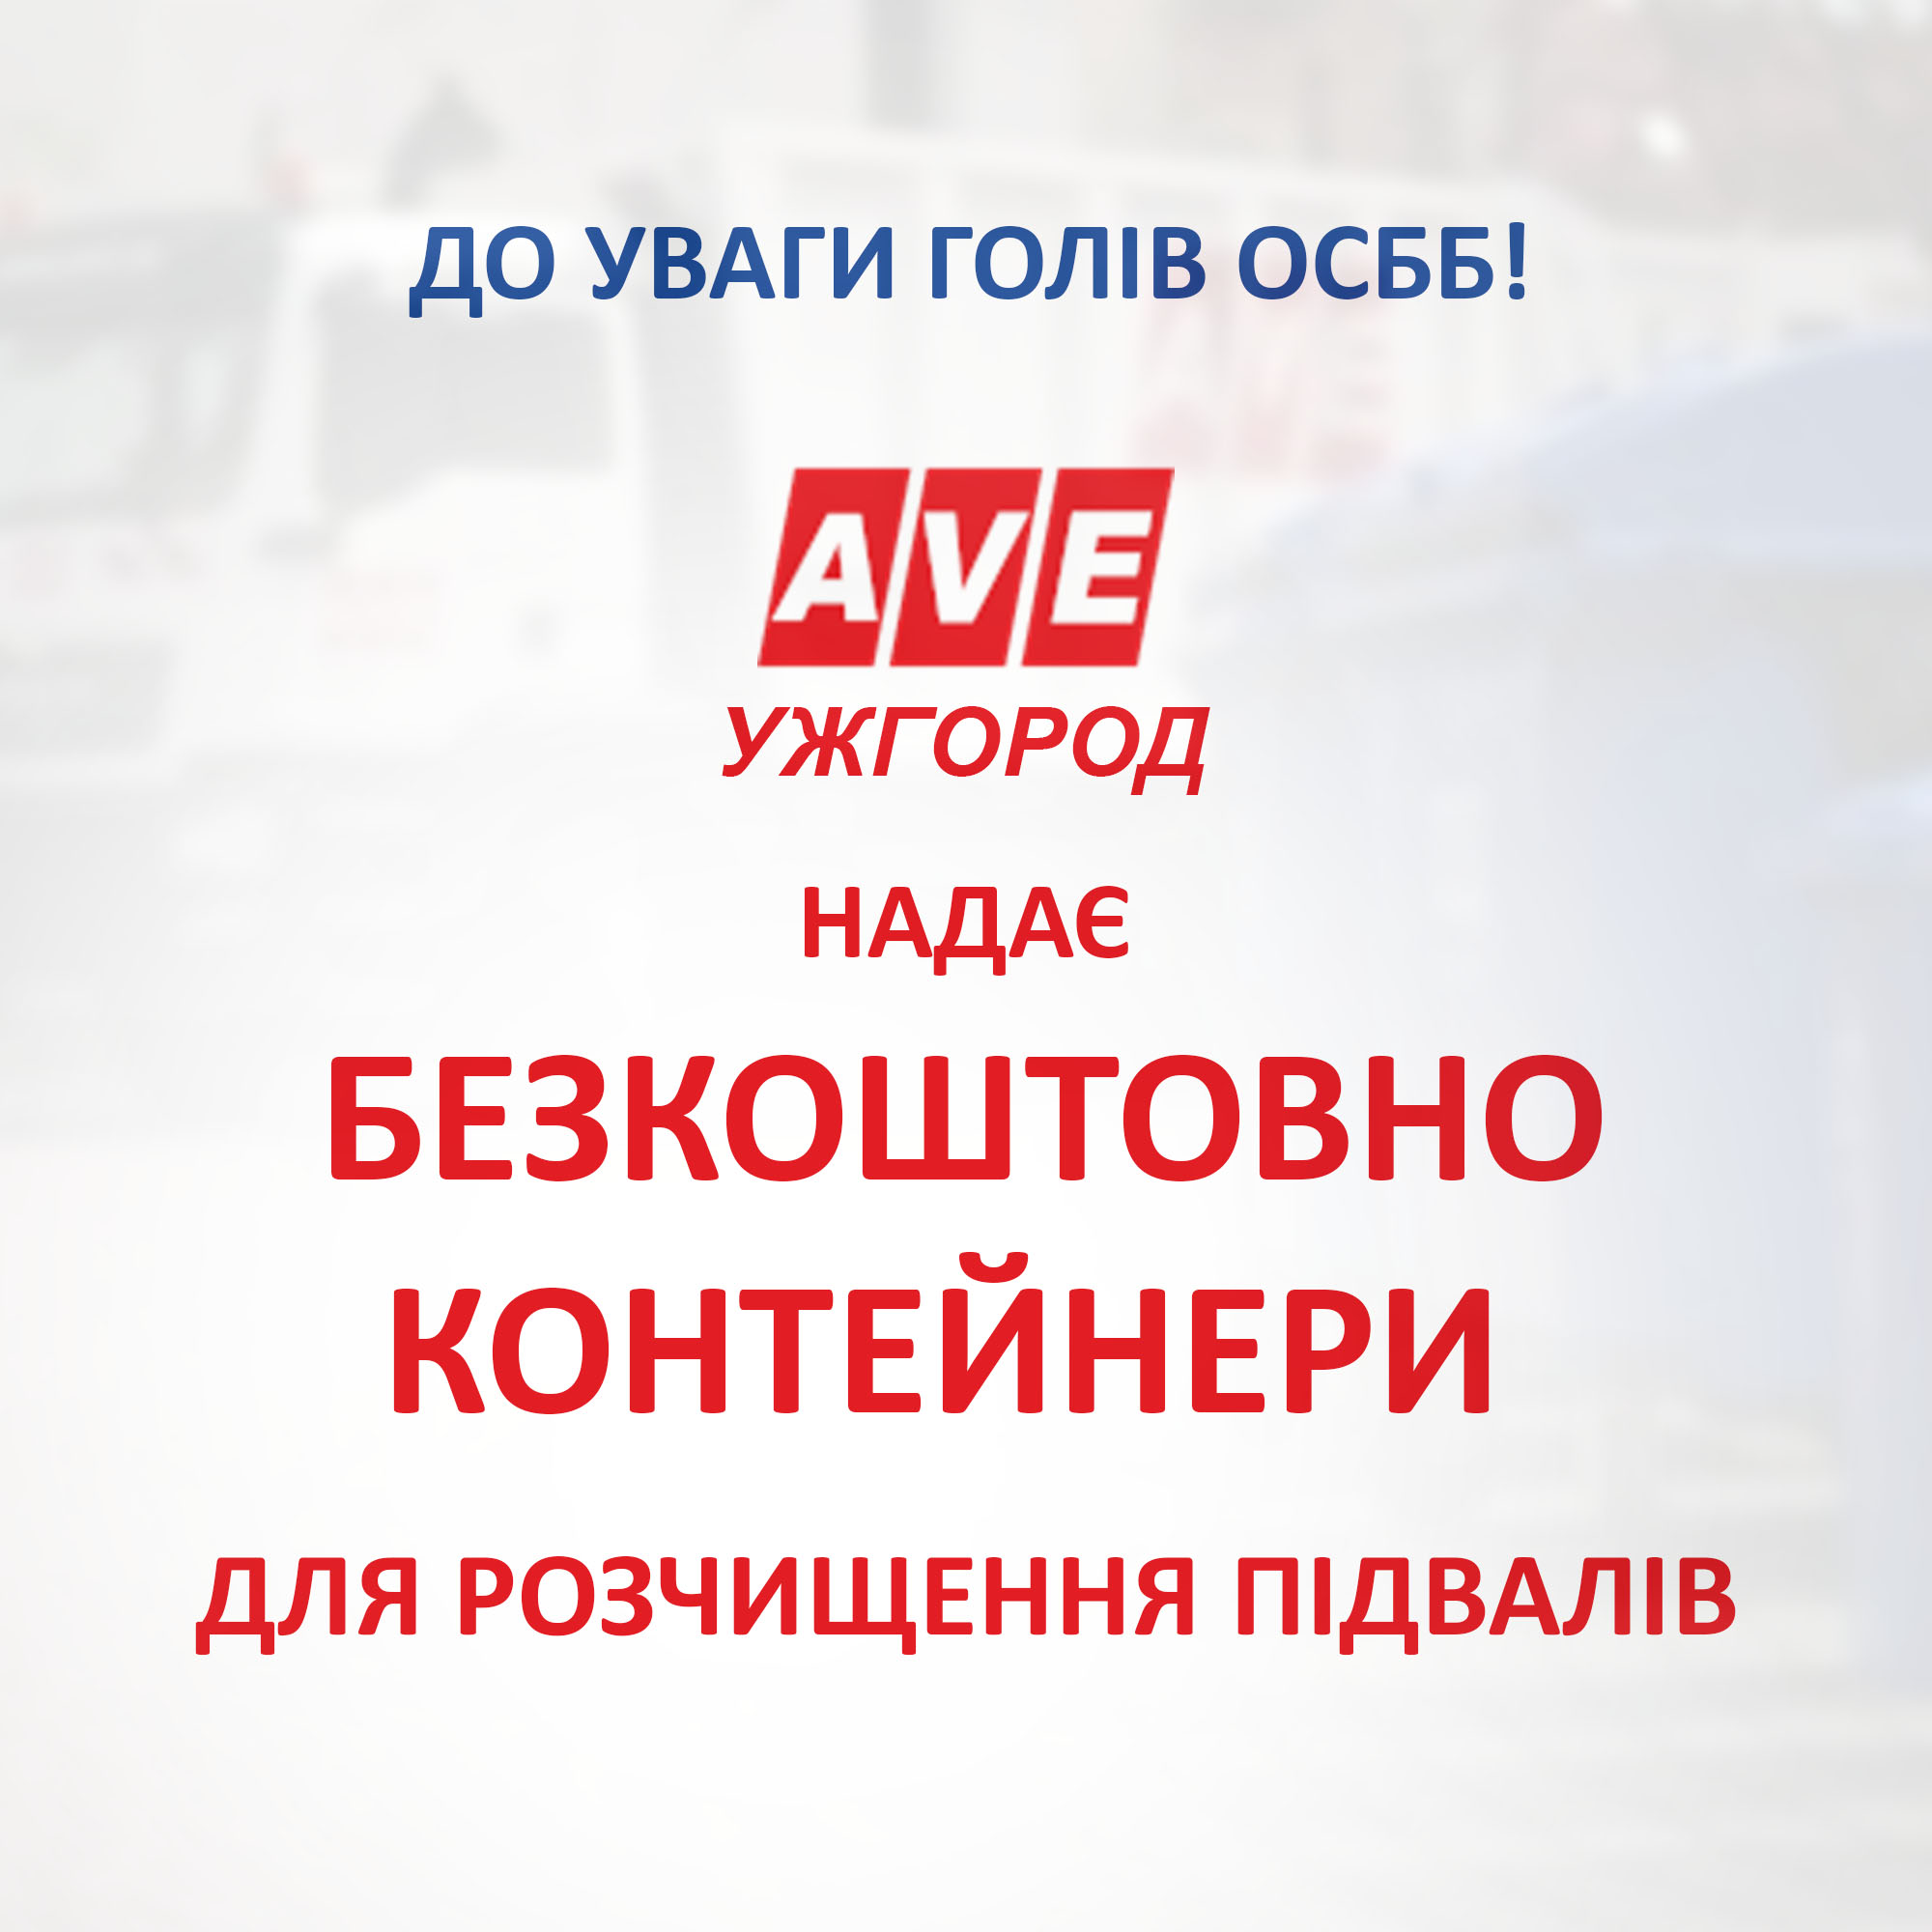 АВЕ Ужгород безкоштовно надає контейнери для розчищення підвалів